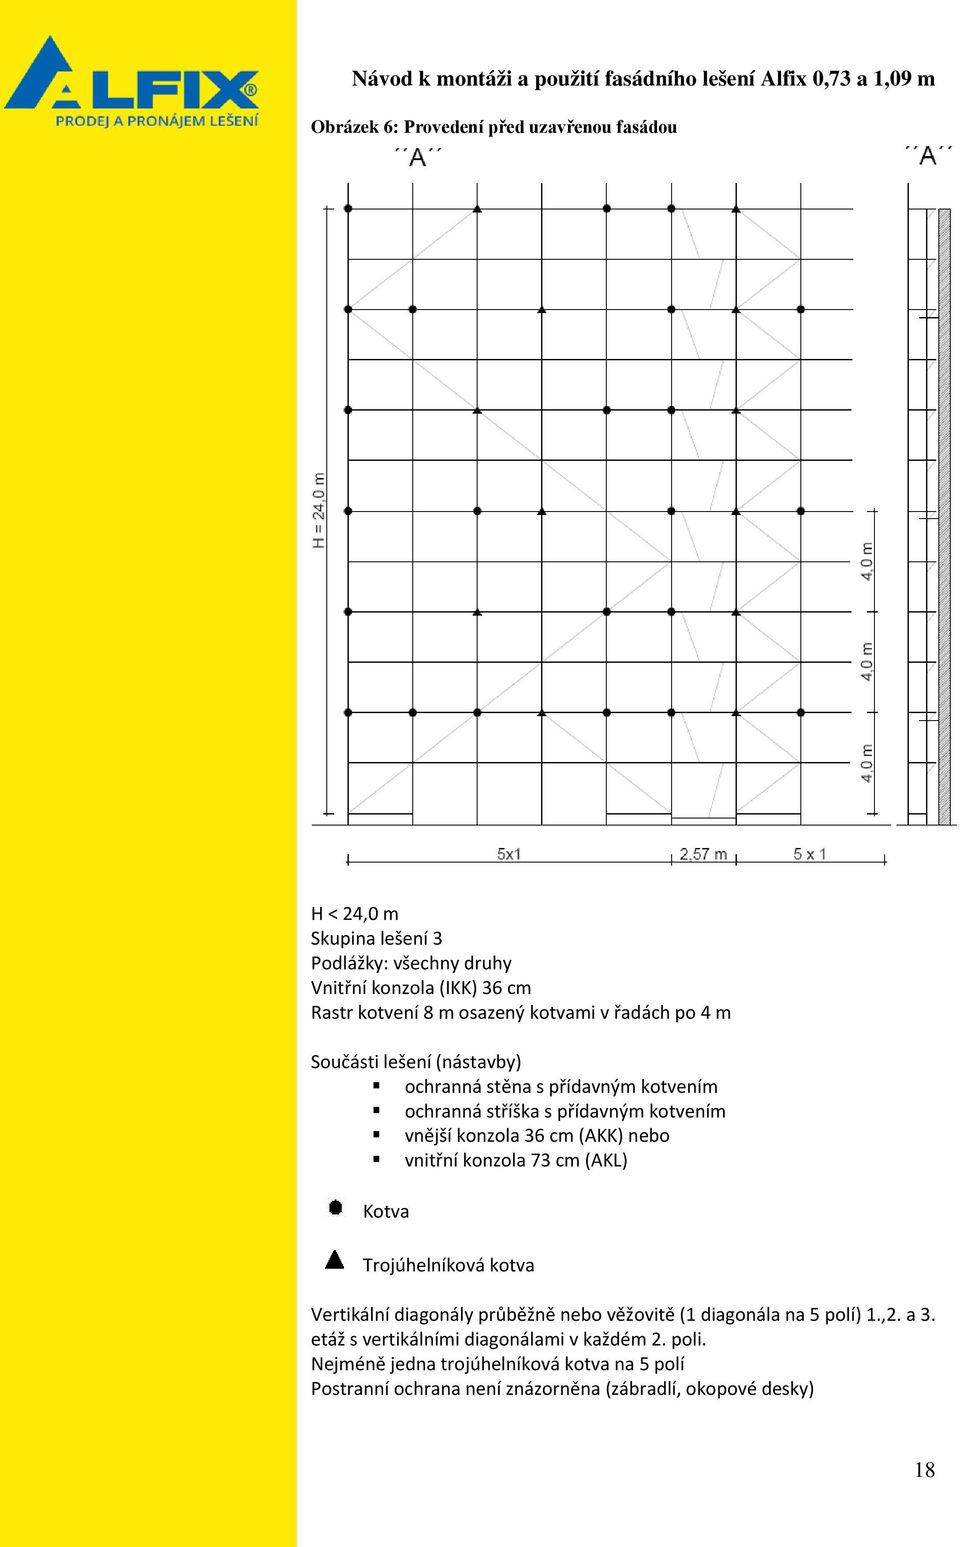 (AKK) nebo vnitřní konzola 73 cm (AKL) Kotva Trojúhelníková kotva Vertikální diagonály průběžně nebo věžovitě (1 diagonála na 5 polí) 1.,2. a 3.